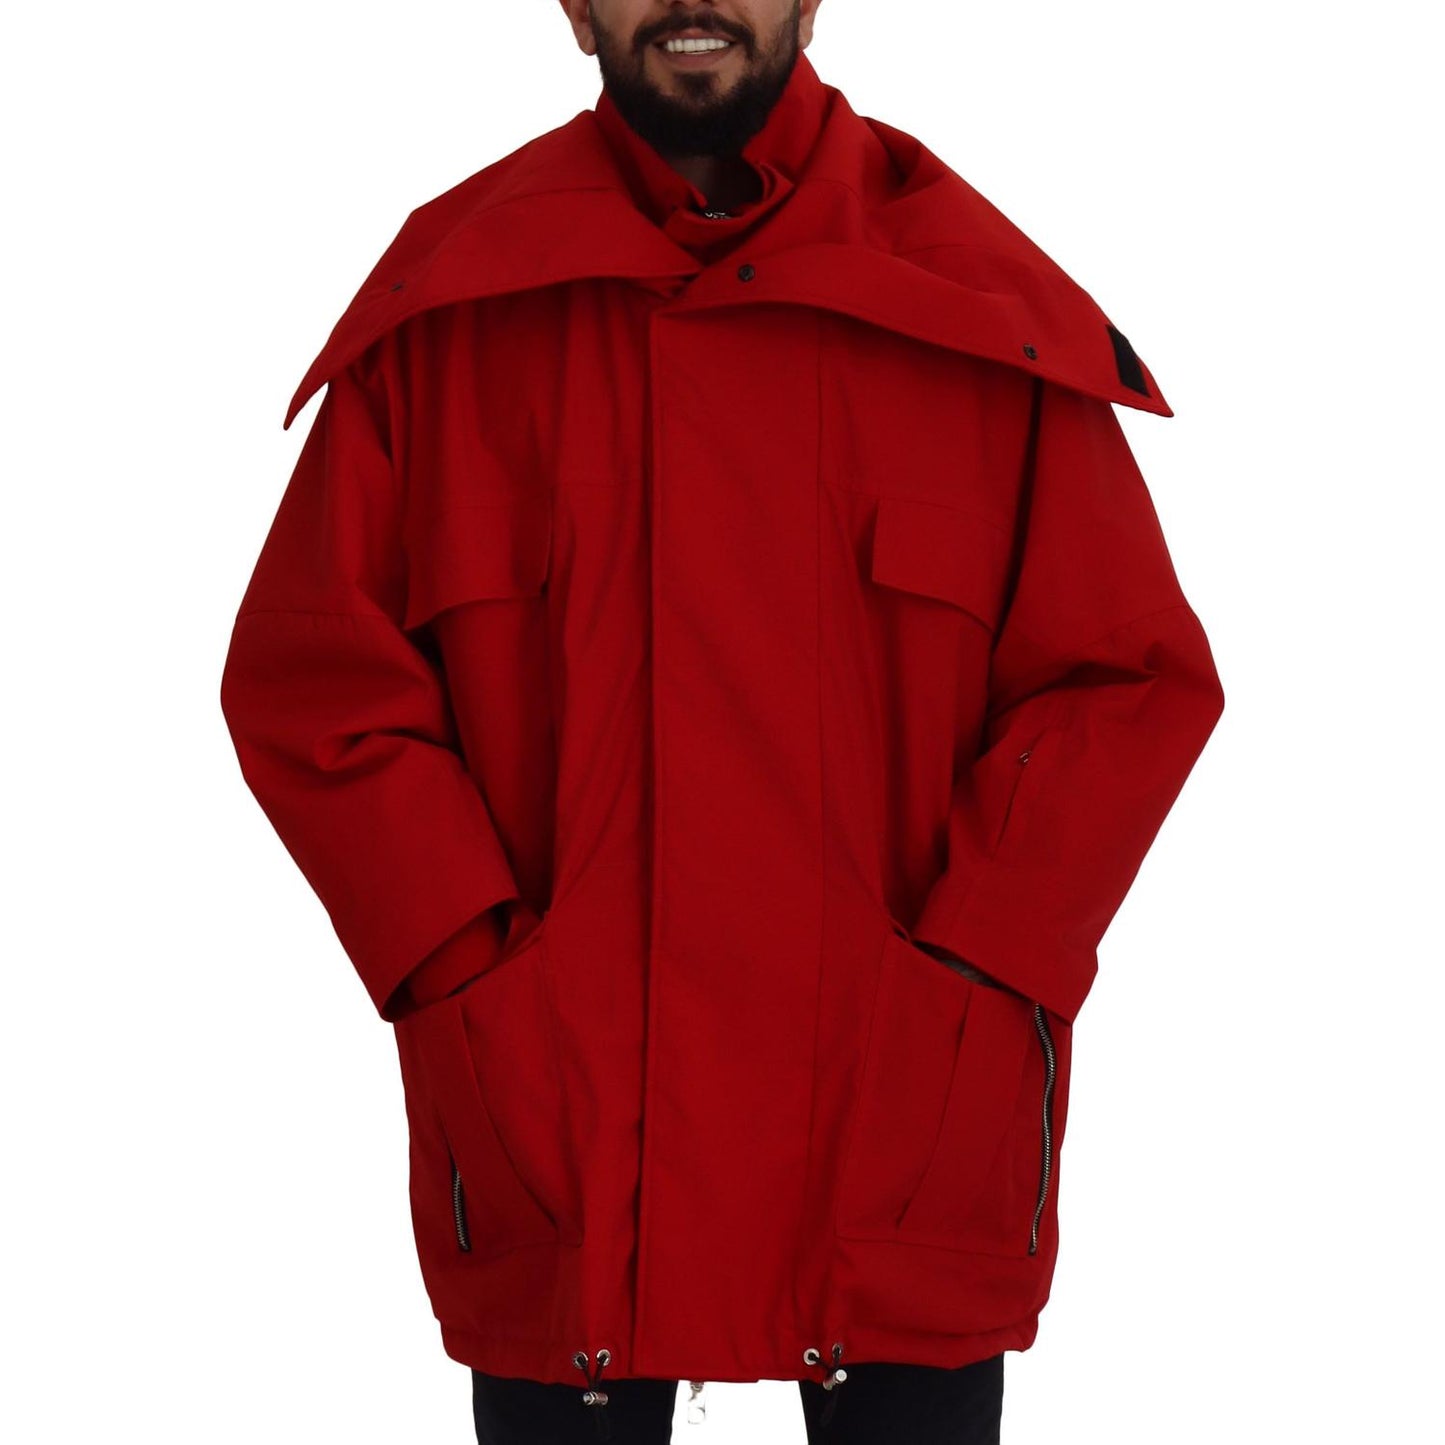 Sleek Red Lightweight Windbreaker Jacket